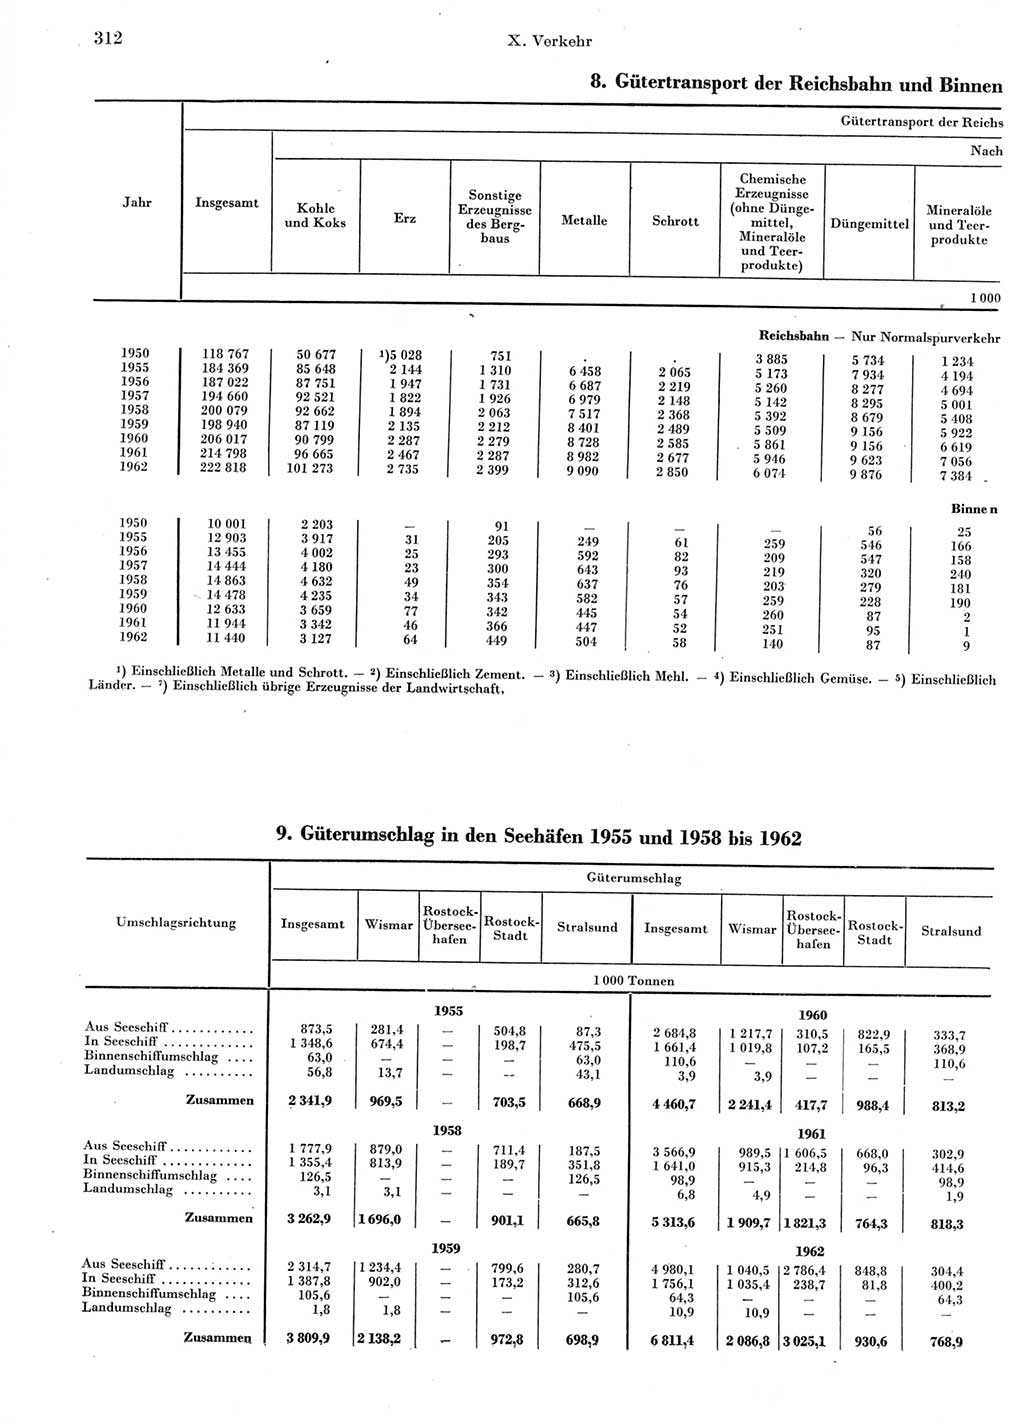 Statistisches Jahrbuch der Deutschen Demokratischen Republik (DDR) 1963, Seite 312 (Stat. Jb. DDR 1963, S. 312)